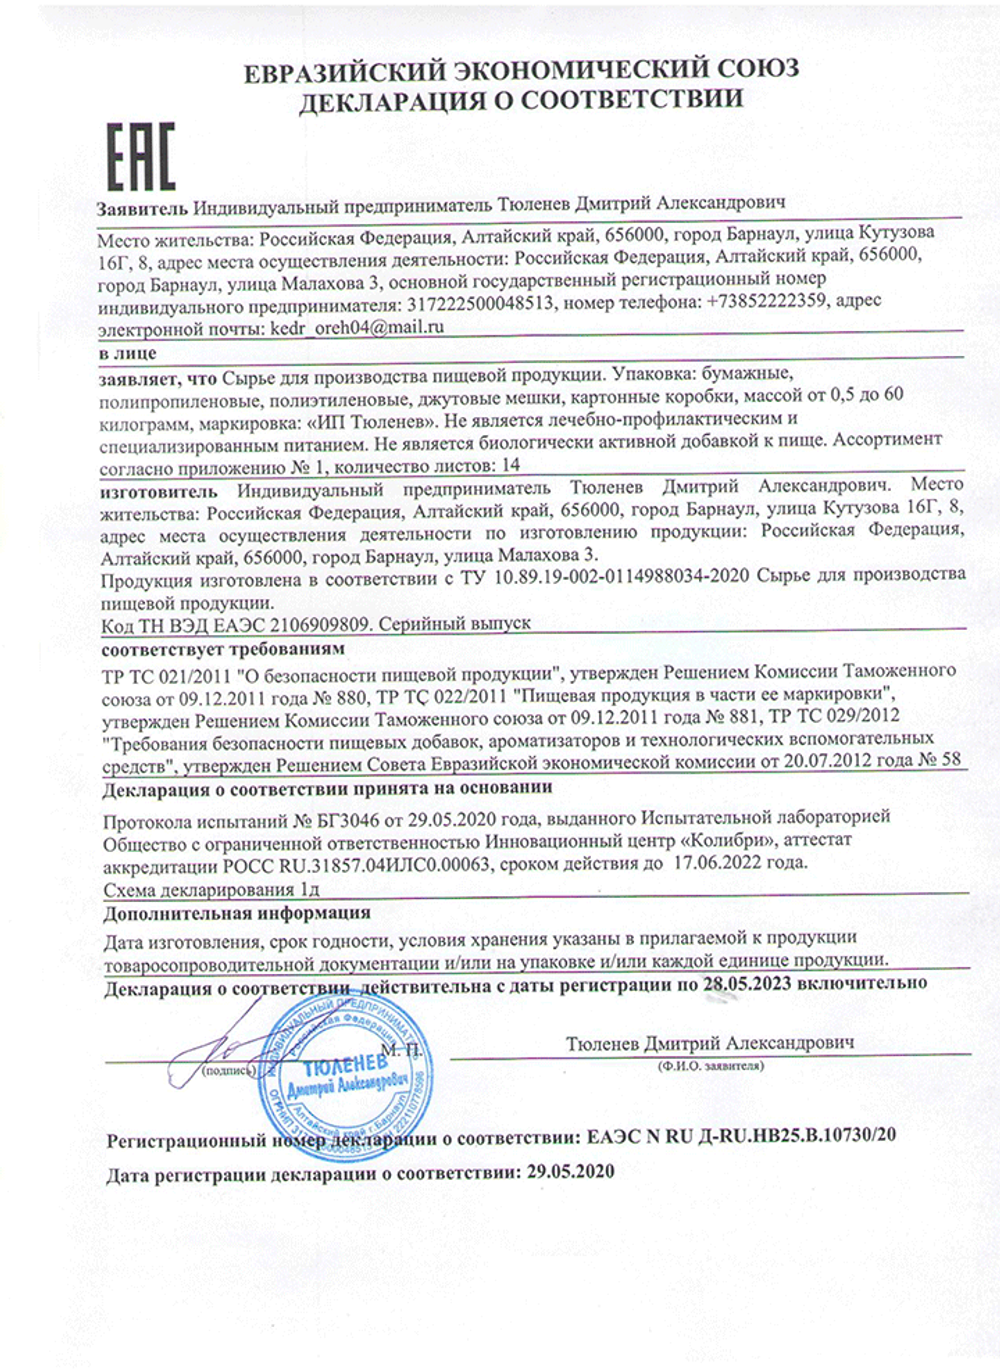 Изображение сертификата соответствия ряски болотной-adonnis.ru